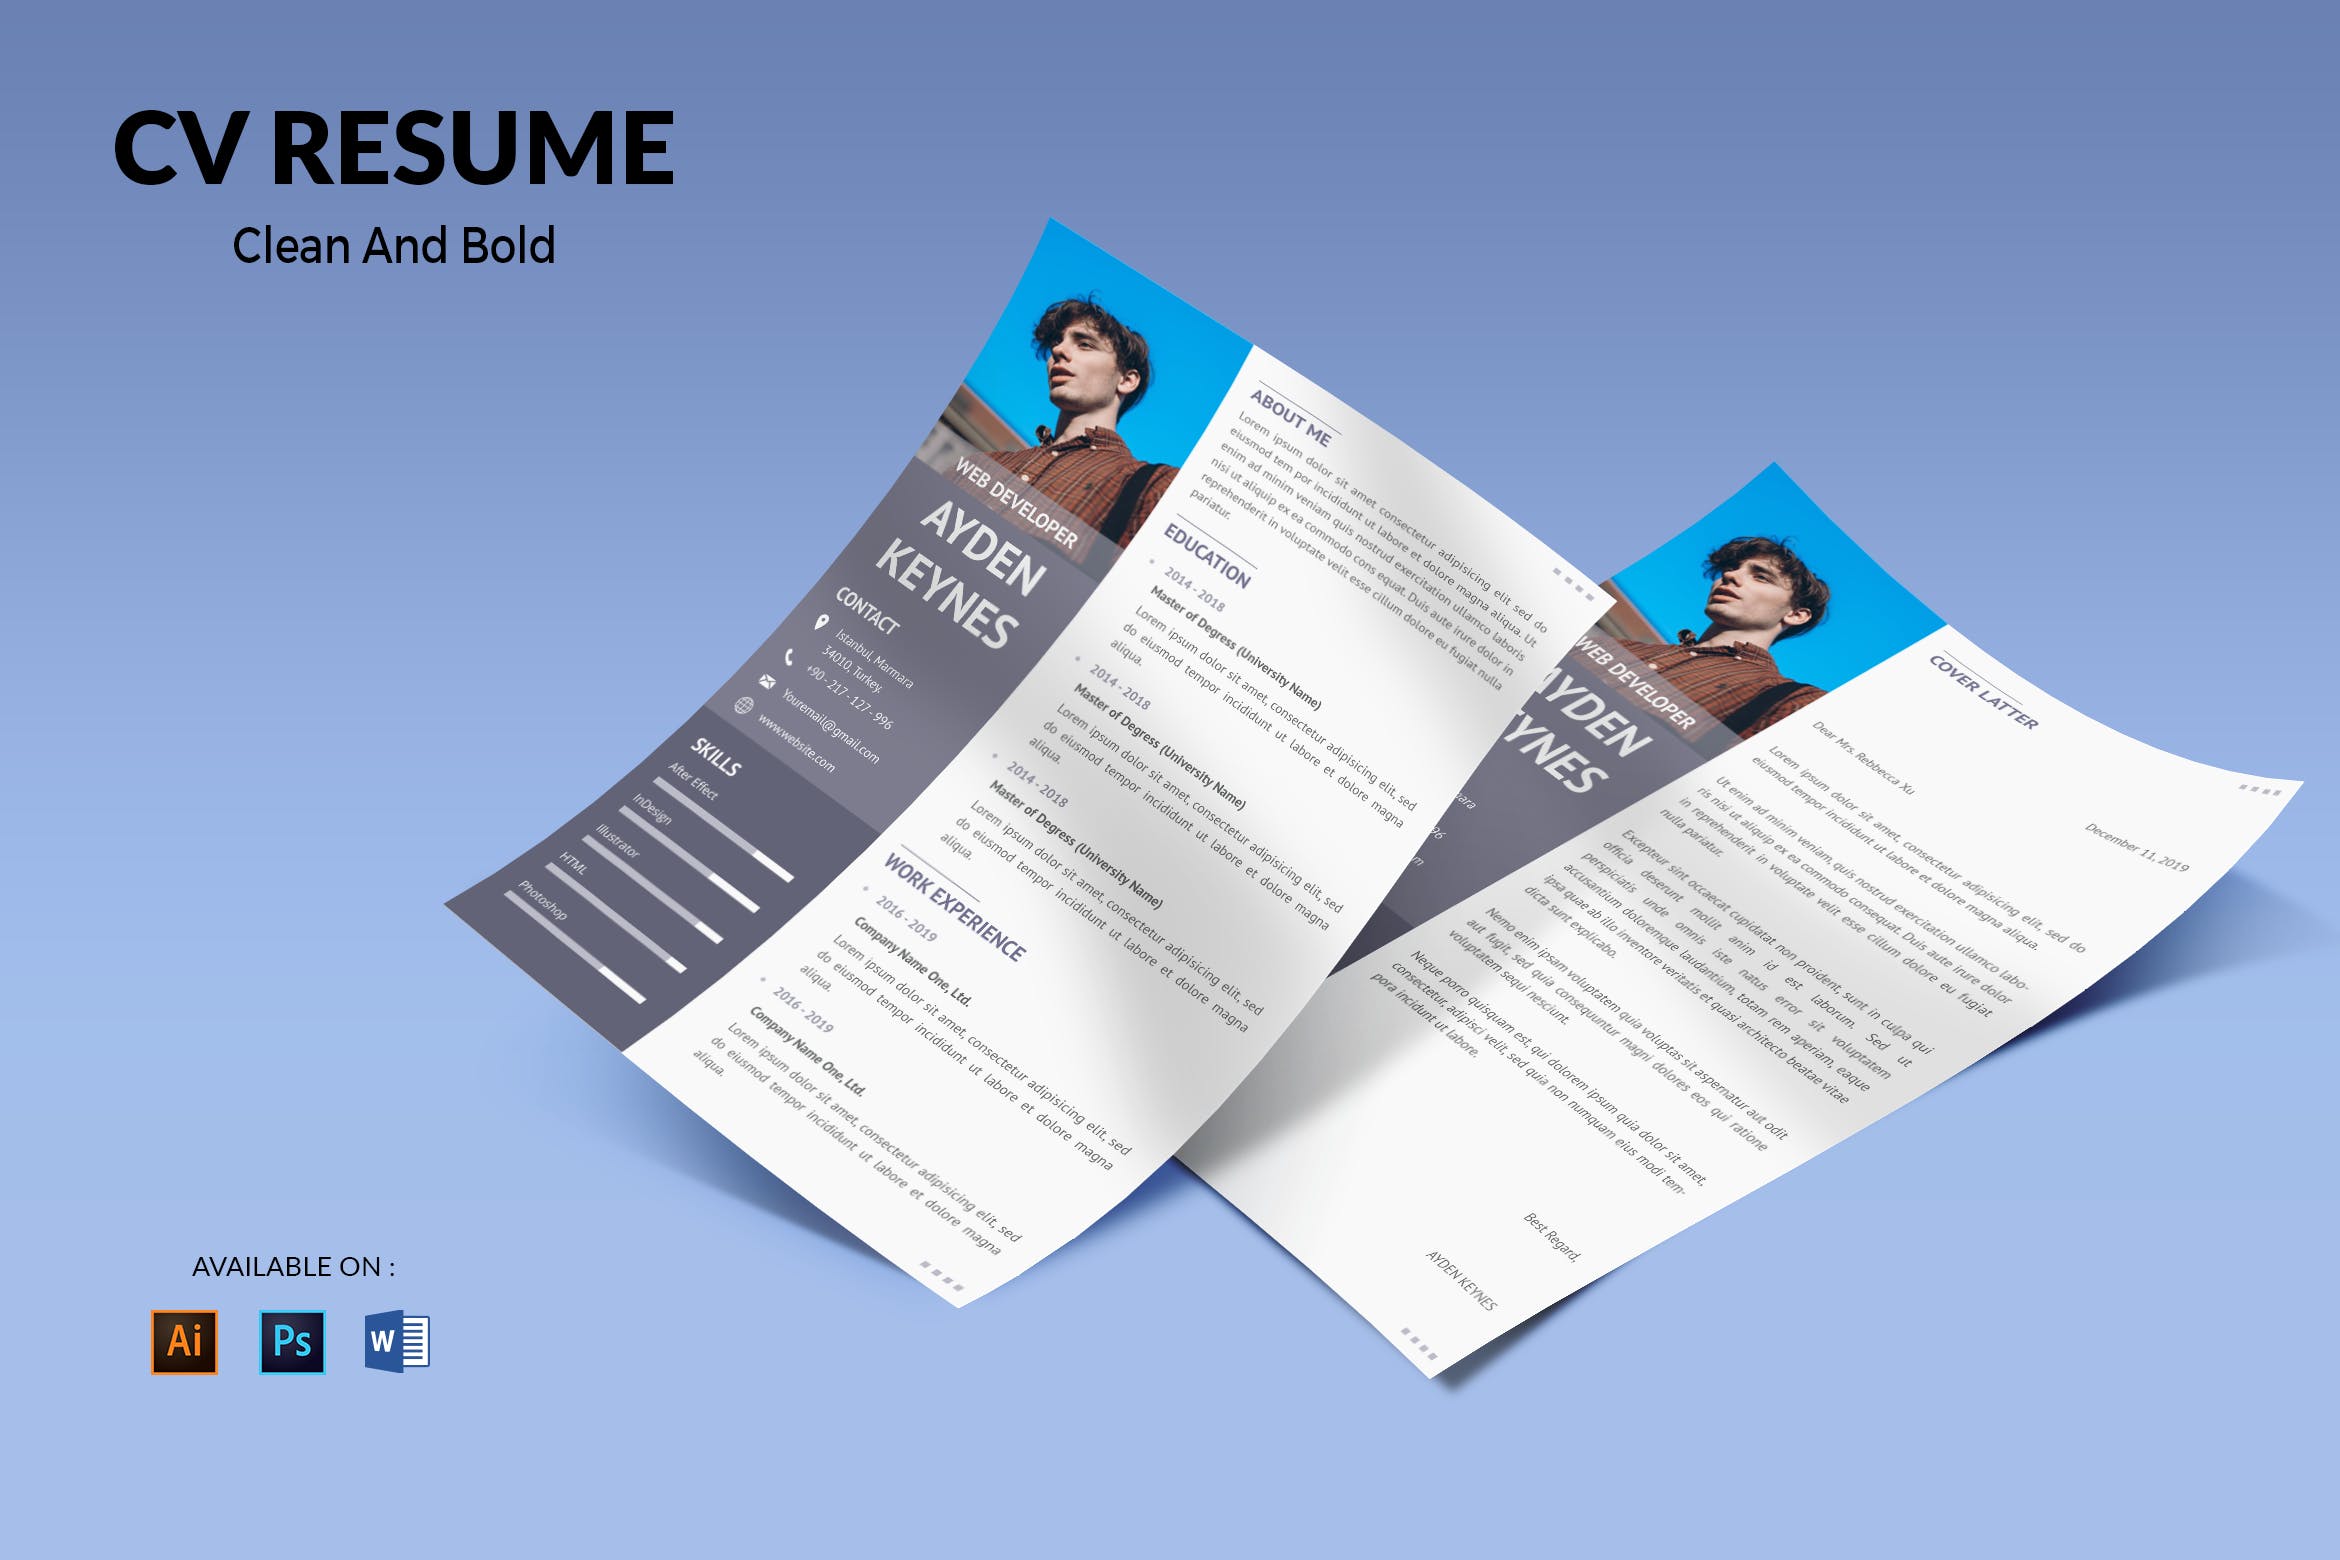 网页开发职位电子蚂蚁素材精选简历模板 CV Resume Simple And Elegant插图